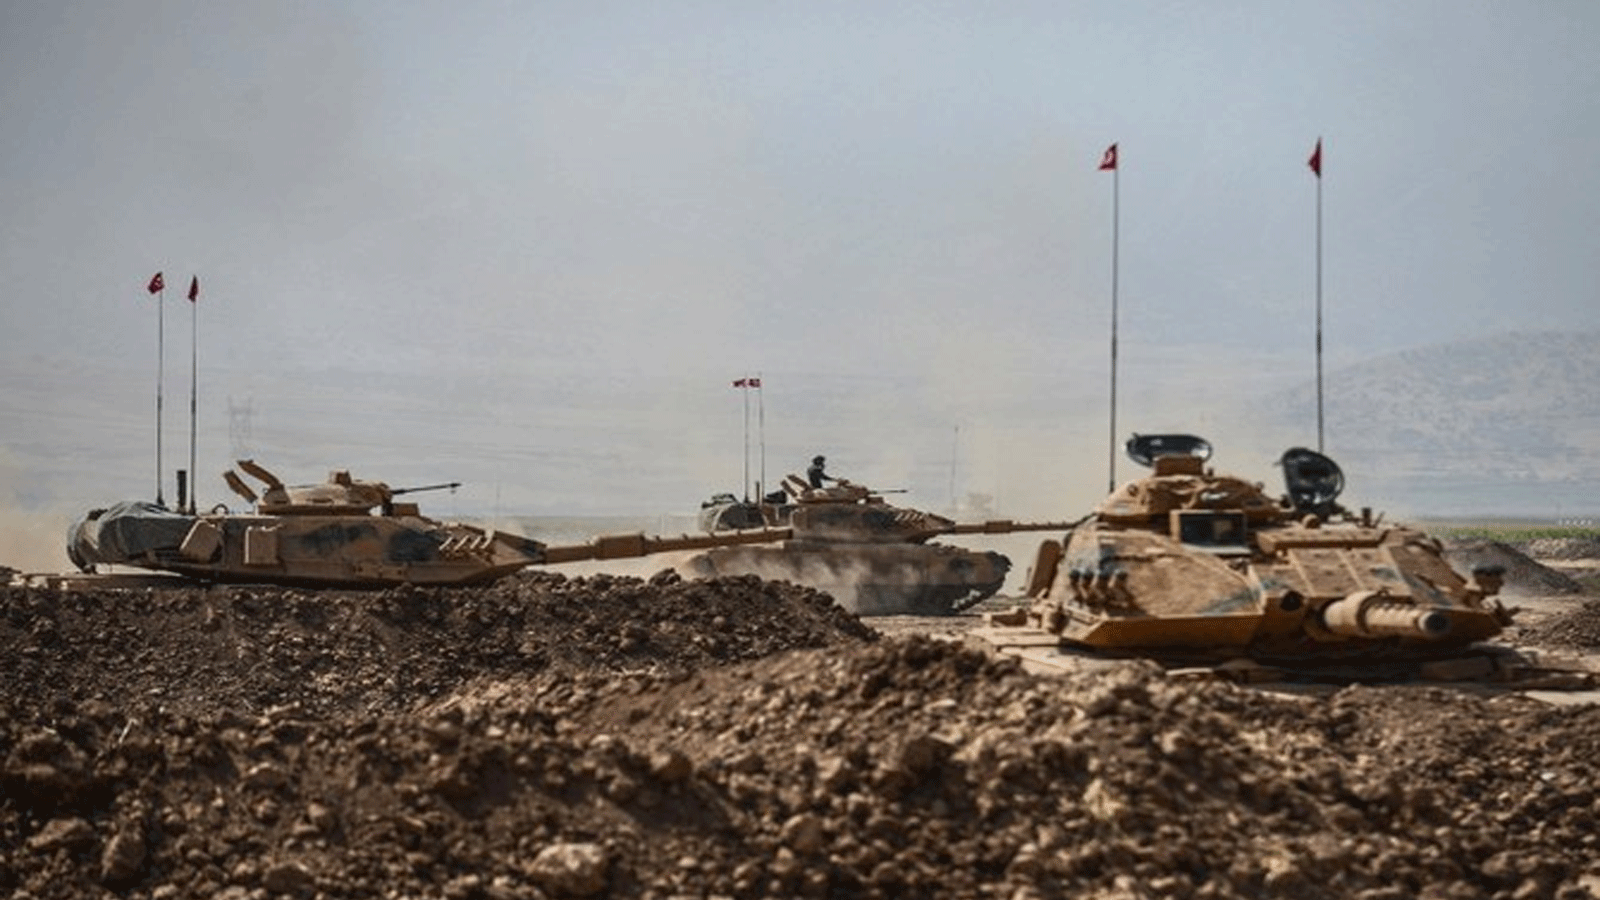 ضرب الجيش التركي أهدافا لحزب العمال الكردستاني، قبل أن تعبر قوات الكوماندوز إلى المنطقة المجاورة